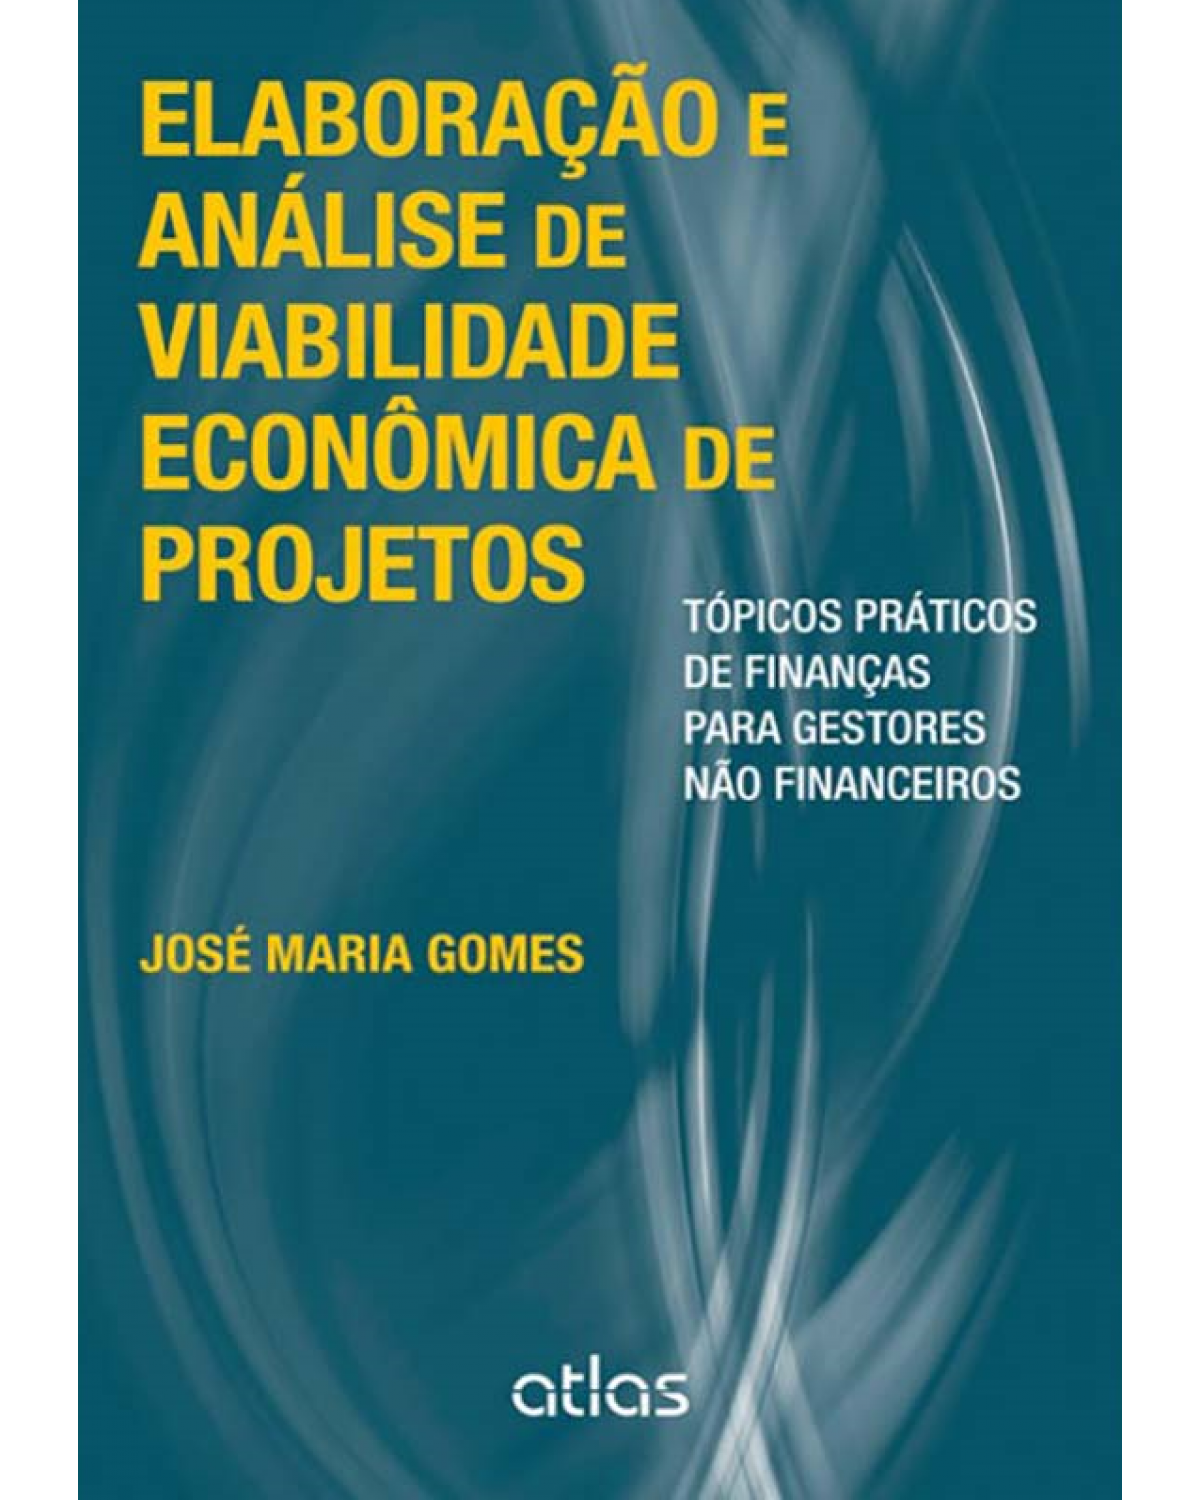 Elaboração e análise de viabilidade econômica de projetos - Tópicos práticos de finanças para gestores não financeiros - 1ª Edição | 2013